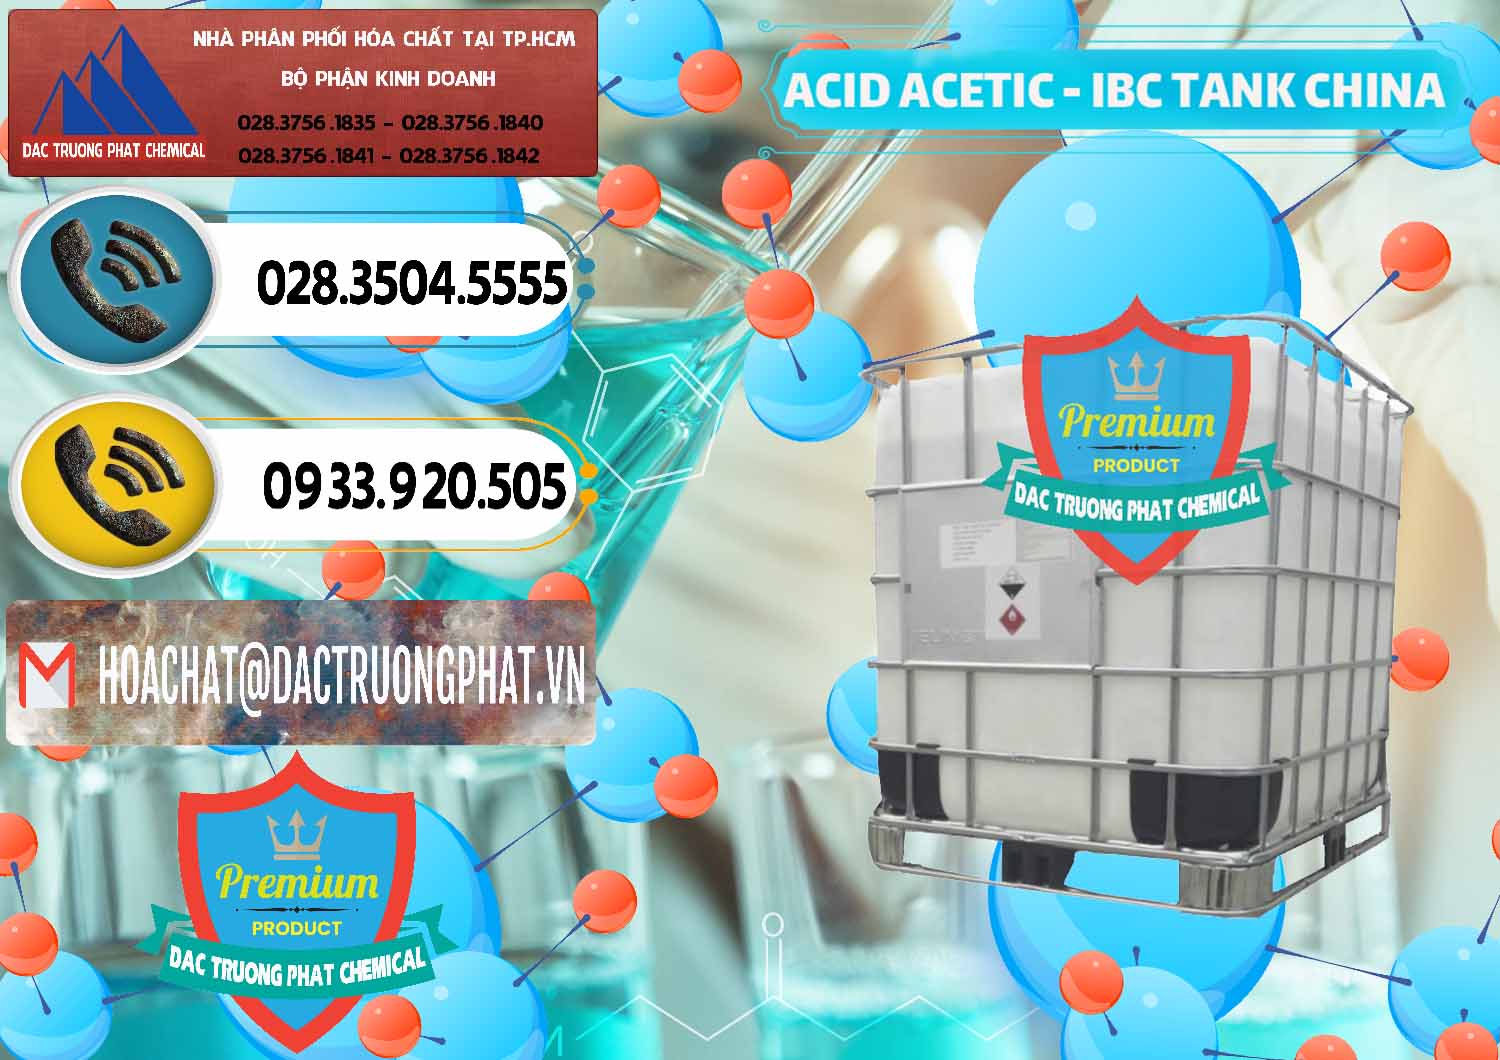 Công ty chuyên bán _ cung ứng Acetic Acid – Axit Acetic Tank Bồn IBC Trung Quốc China - 0443 - Chuyên phân phối ( cung cấp ) hóa chất tại TP.HCM - hoachatdetnhuom.vn